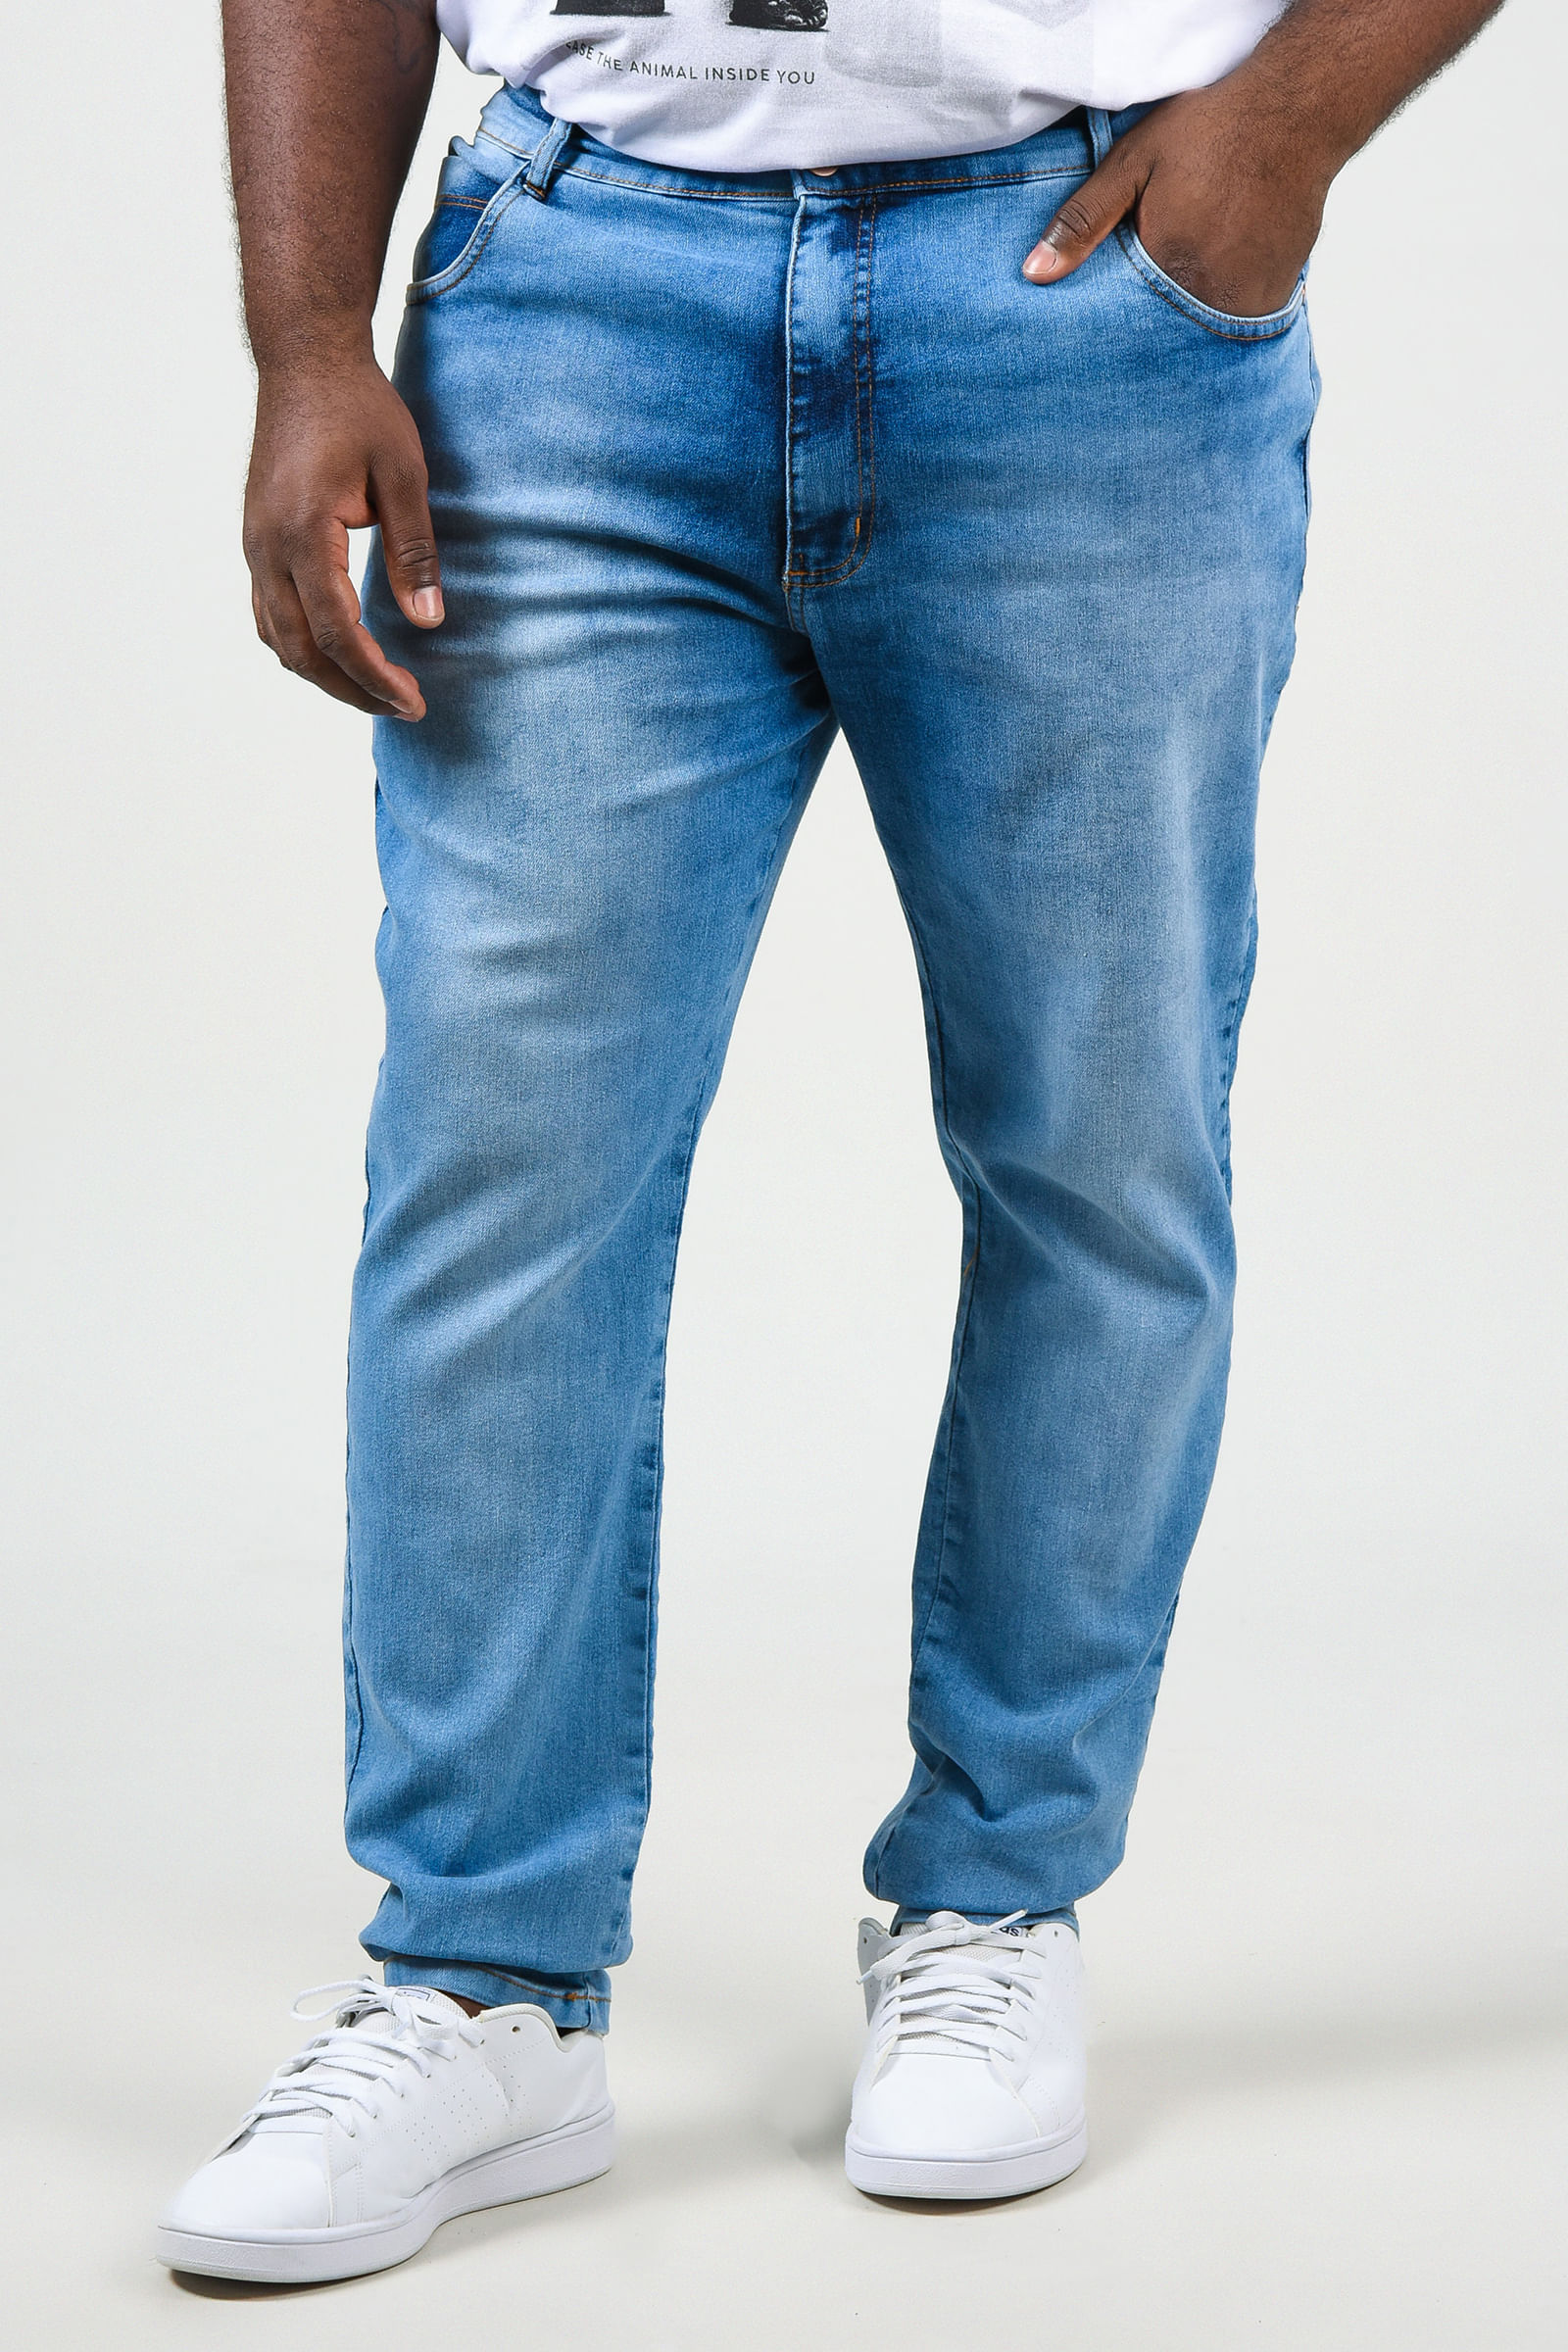 Calça skinny jeans com elastano plus size azul claro